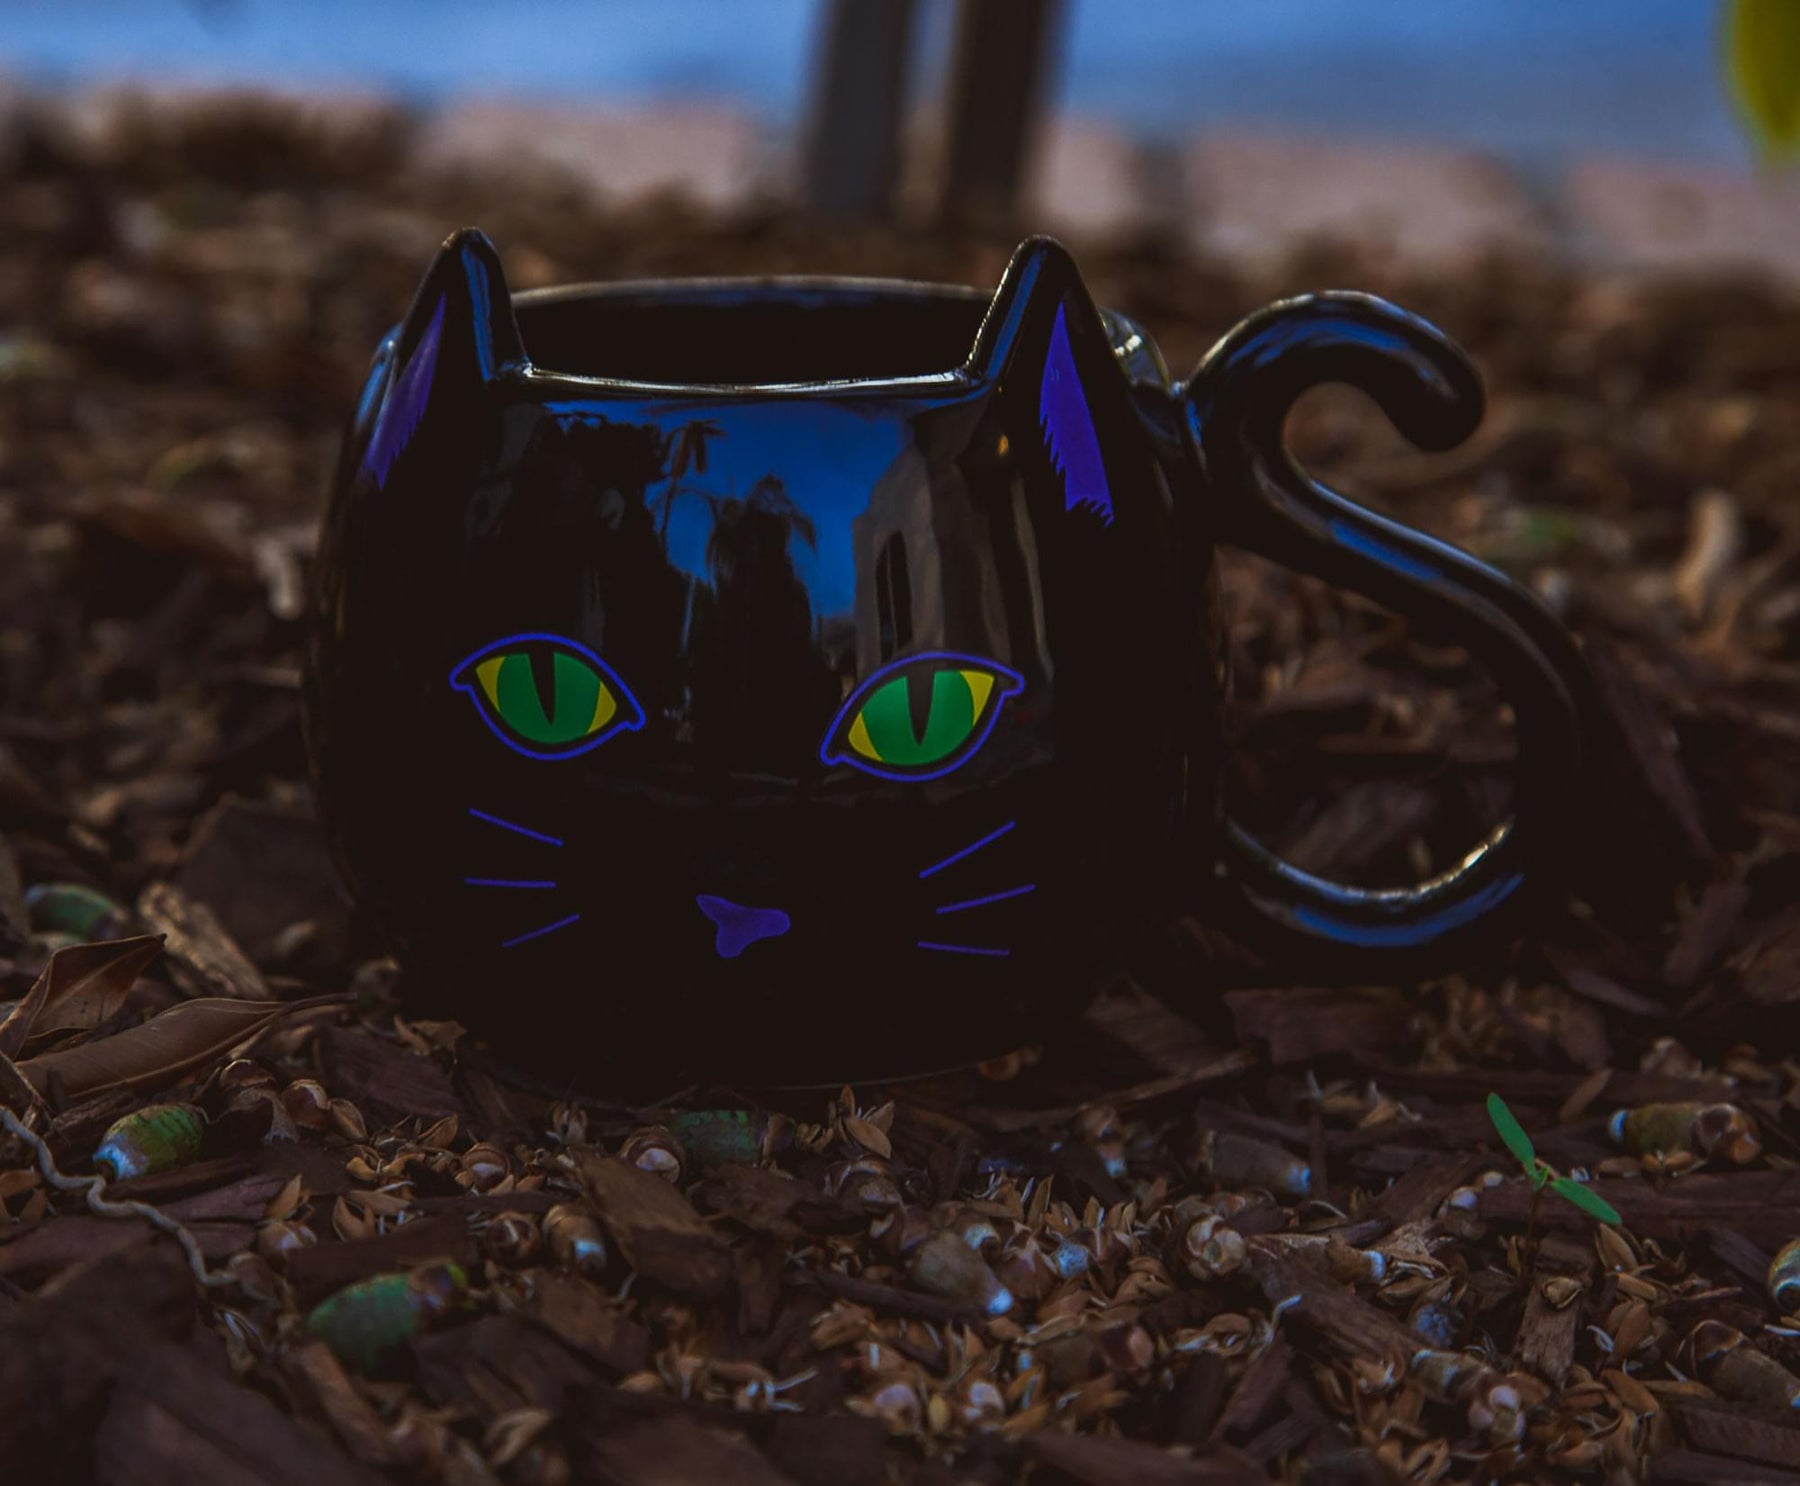 Disney Hocus Pocus Binx Black Cat Sculpted Ceramic Mug | Holds 20 Ounces